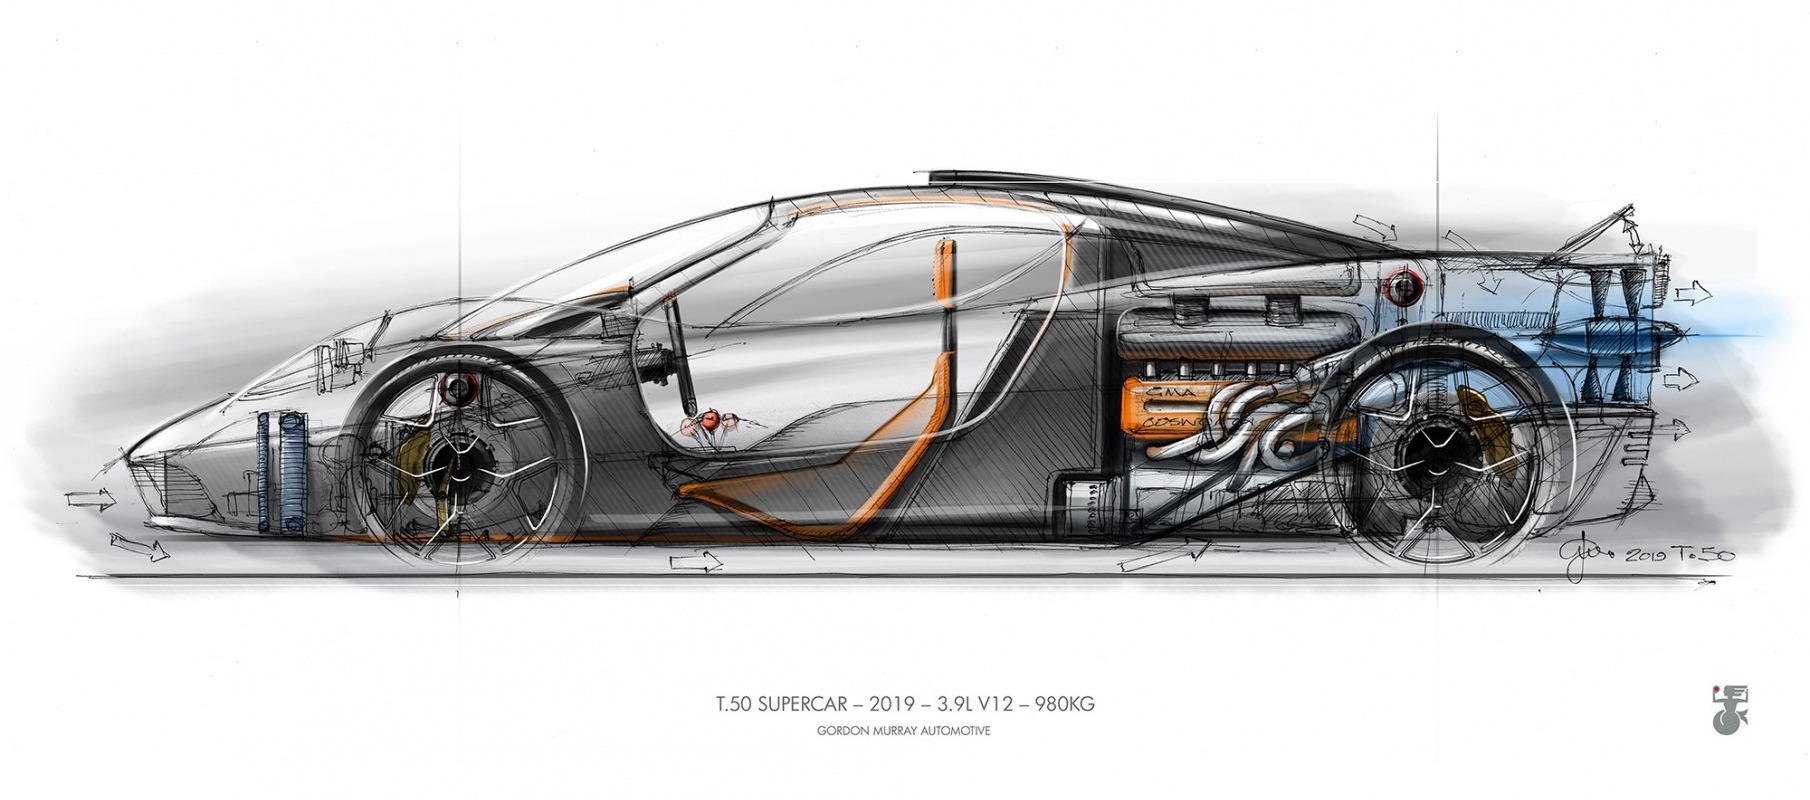 T.50, un McLaren F1 renovado verá la luz en 2022